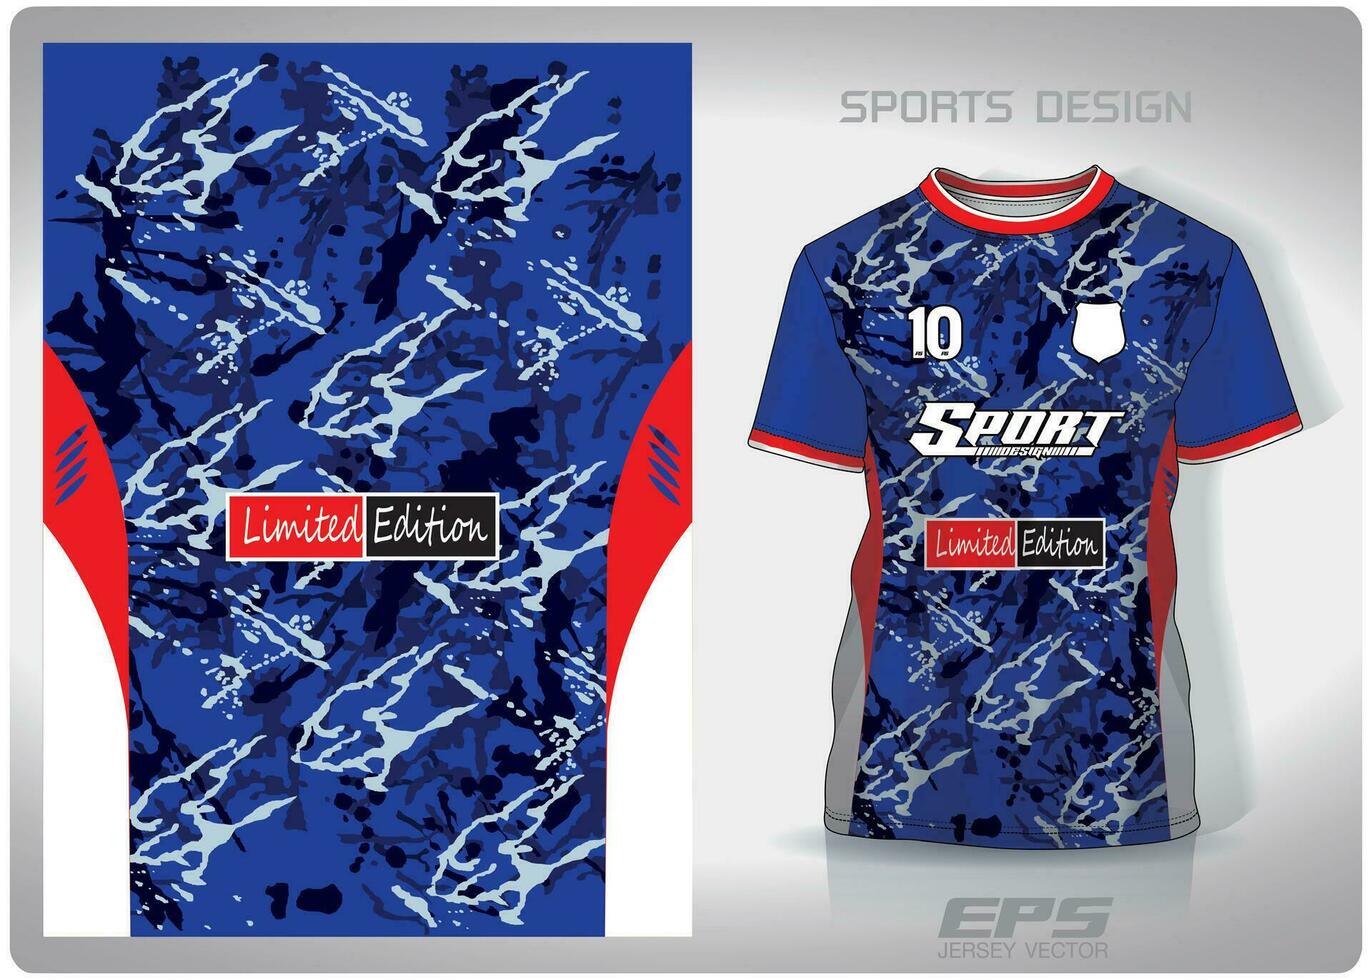 vektor sporter skjorta bakgrund bild.blå militär kamouflage mönster design, illustration, textil- bakgrund för sporter t-shirt, fotboll jersey skjorta